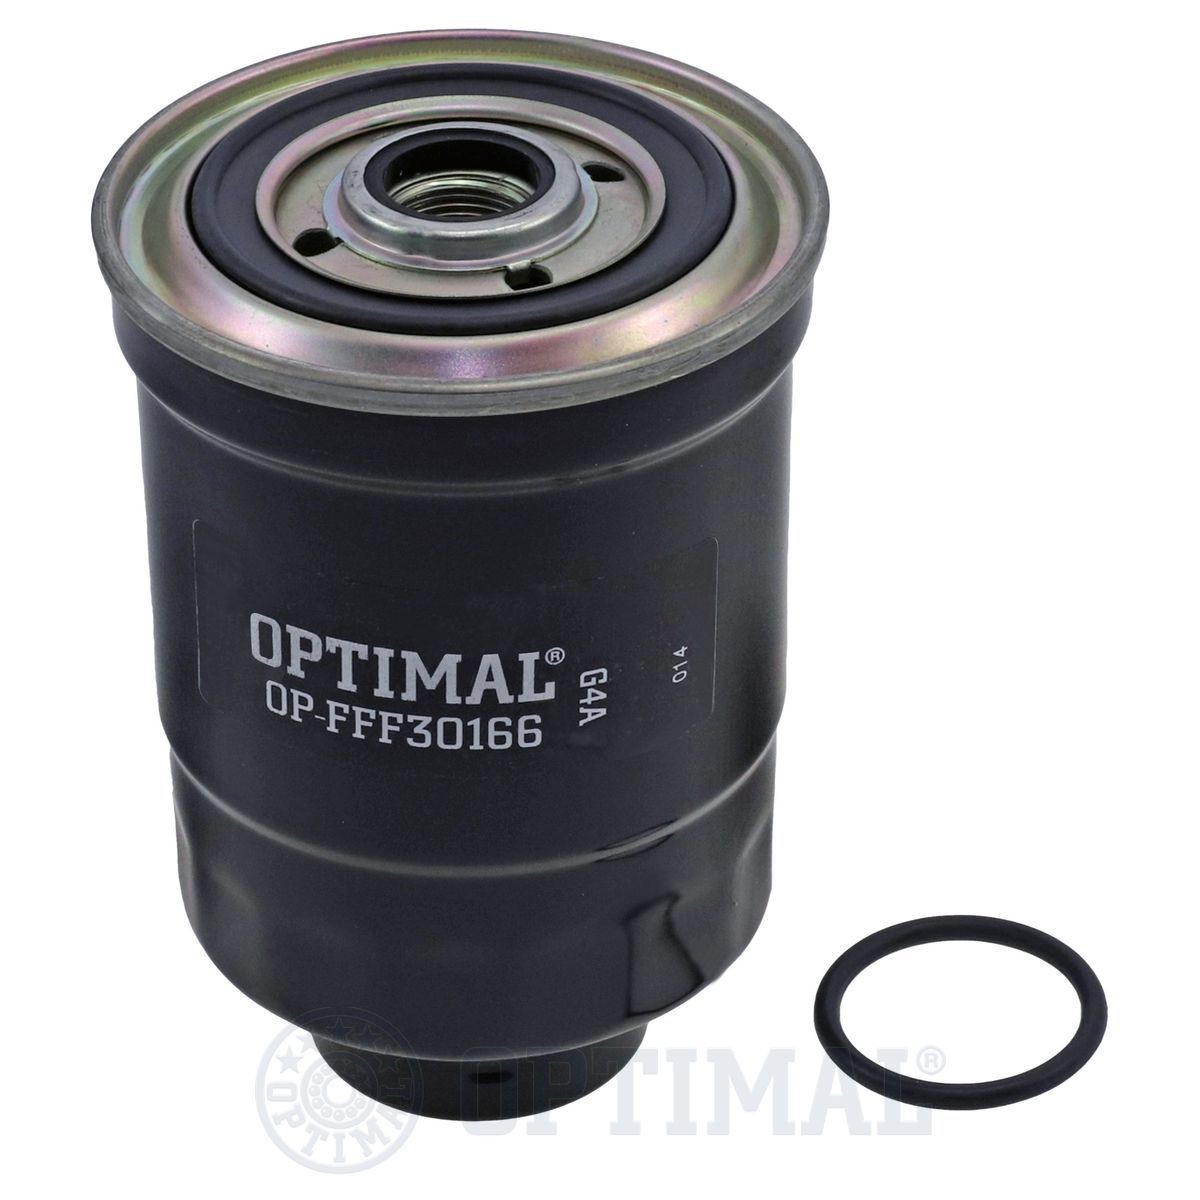 OPTIMAL OP-FFF30166 Fuel filter 900907811